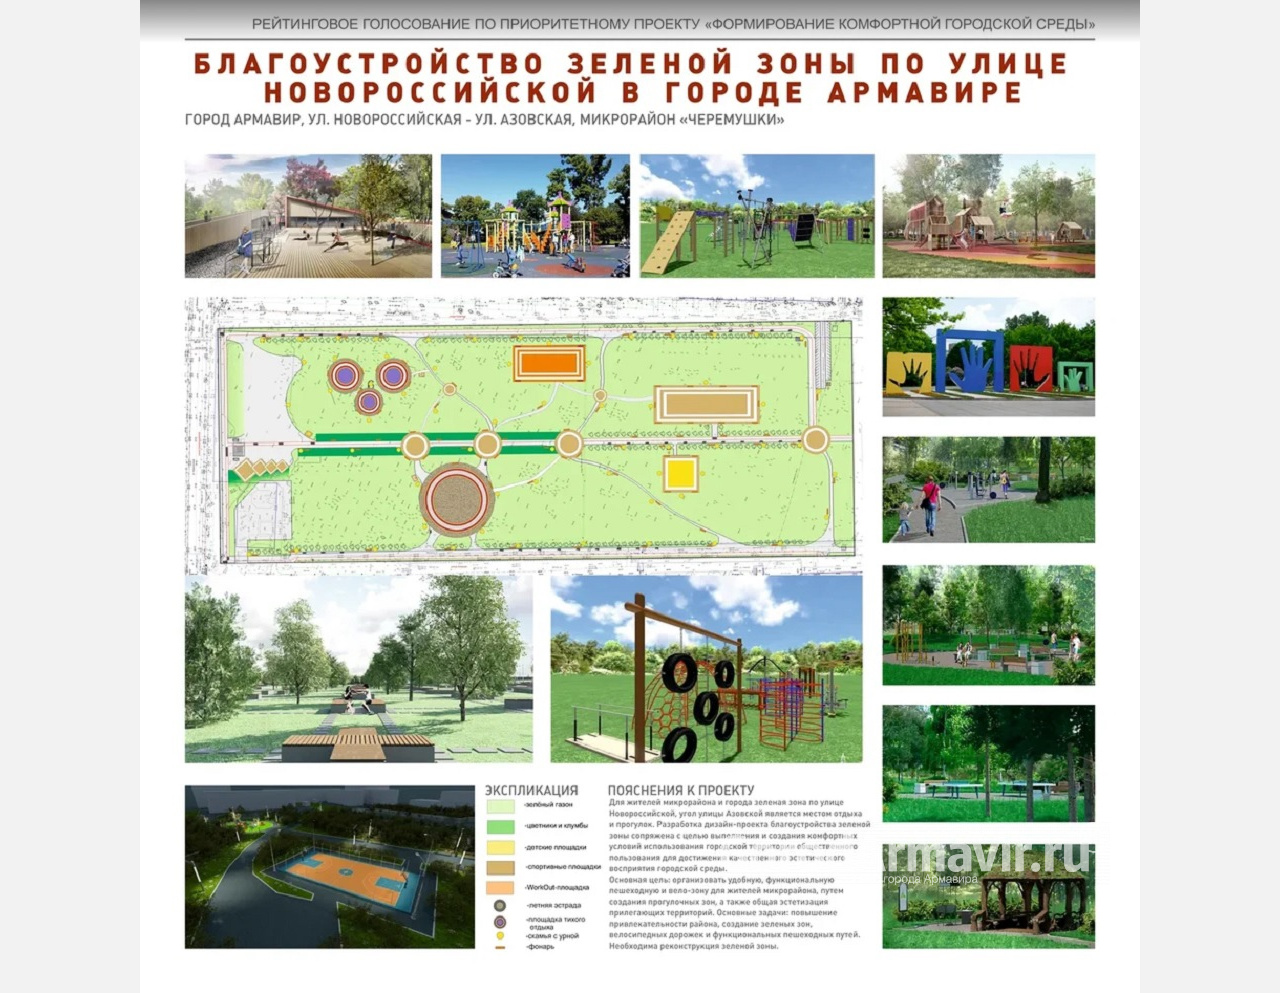 Работы по реформации парка «Черемушки» в Армавире начнутся 1 апреля 